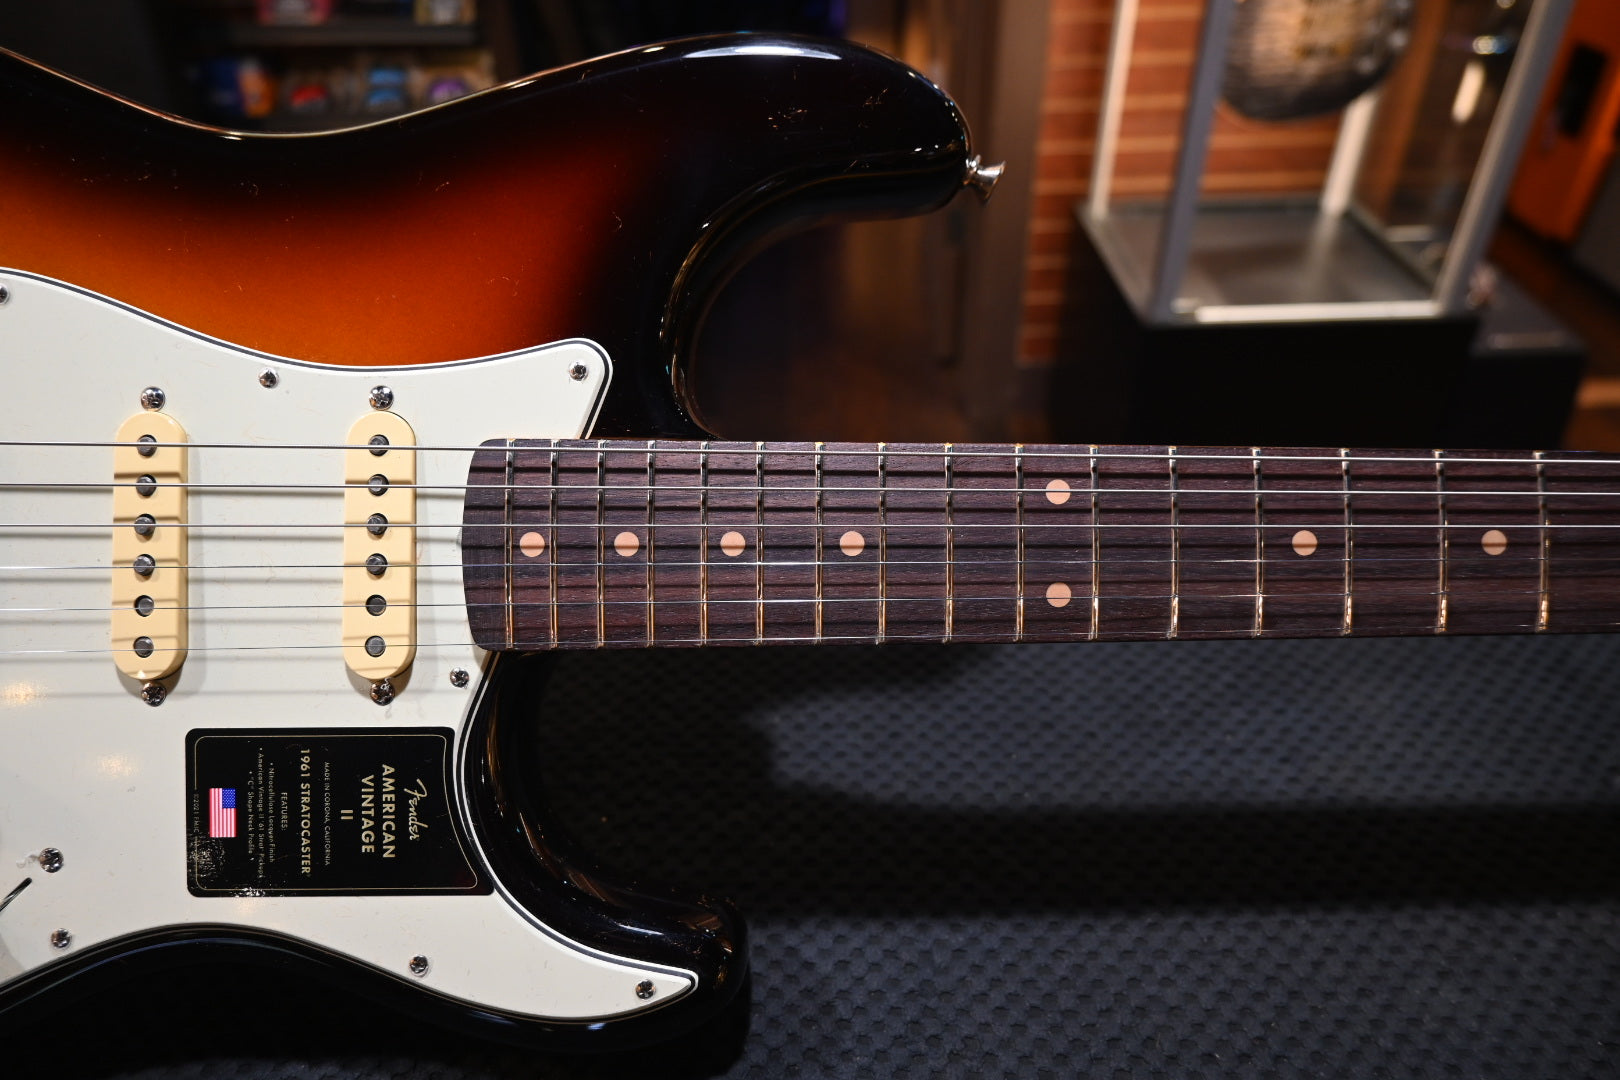 Fender American Vintage II 1961 Stratocaster - 3-Color Sunburst Guitar #2506 - Danville Music